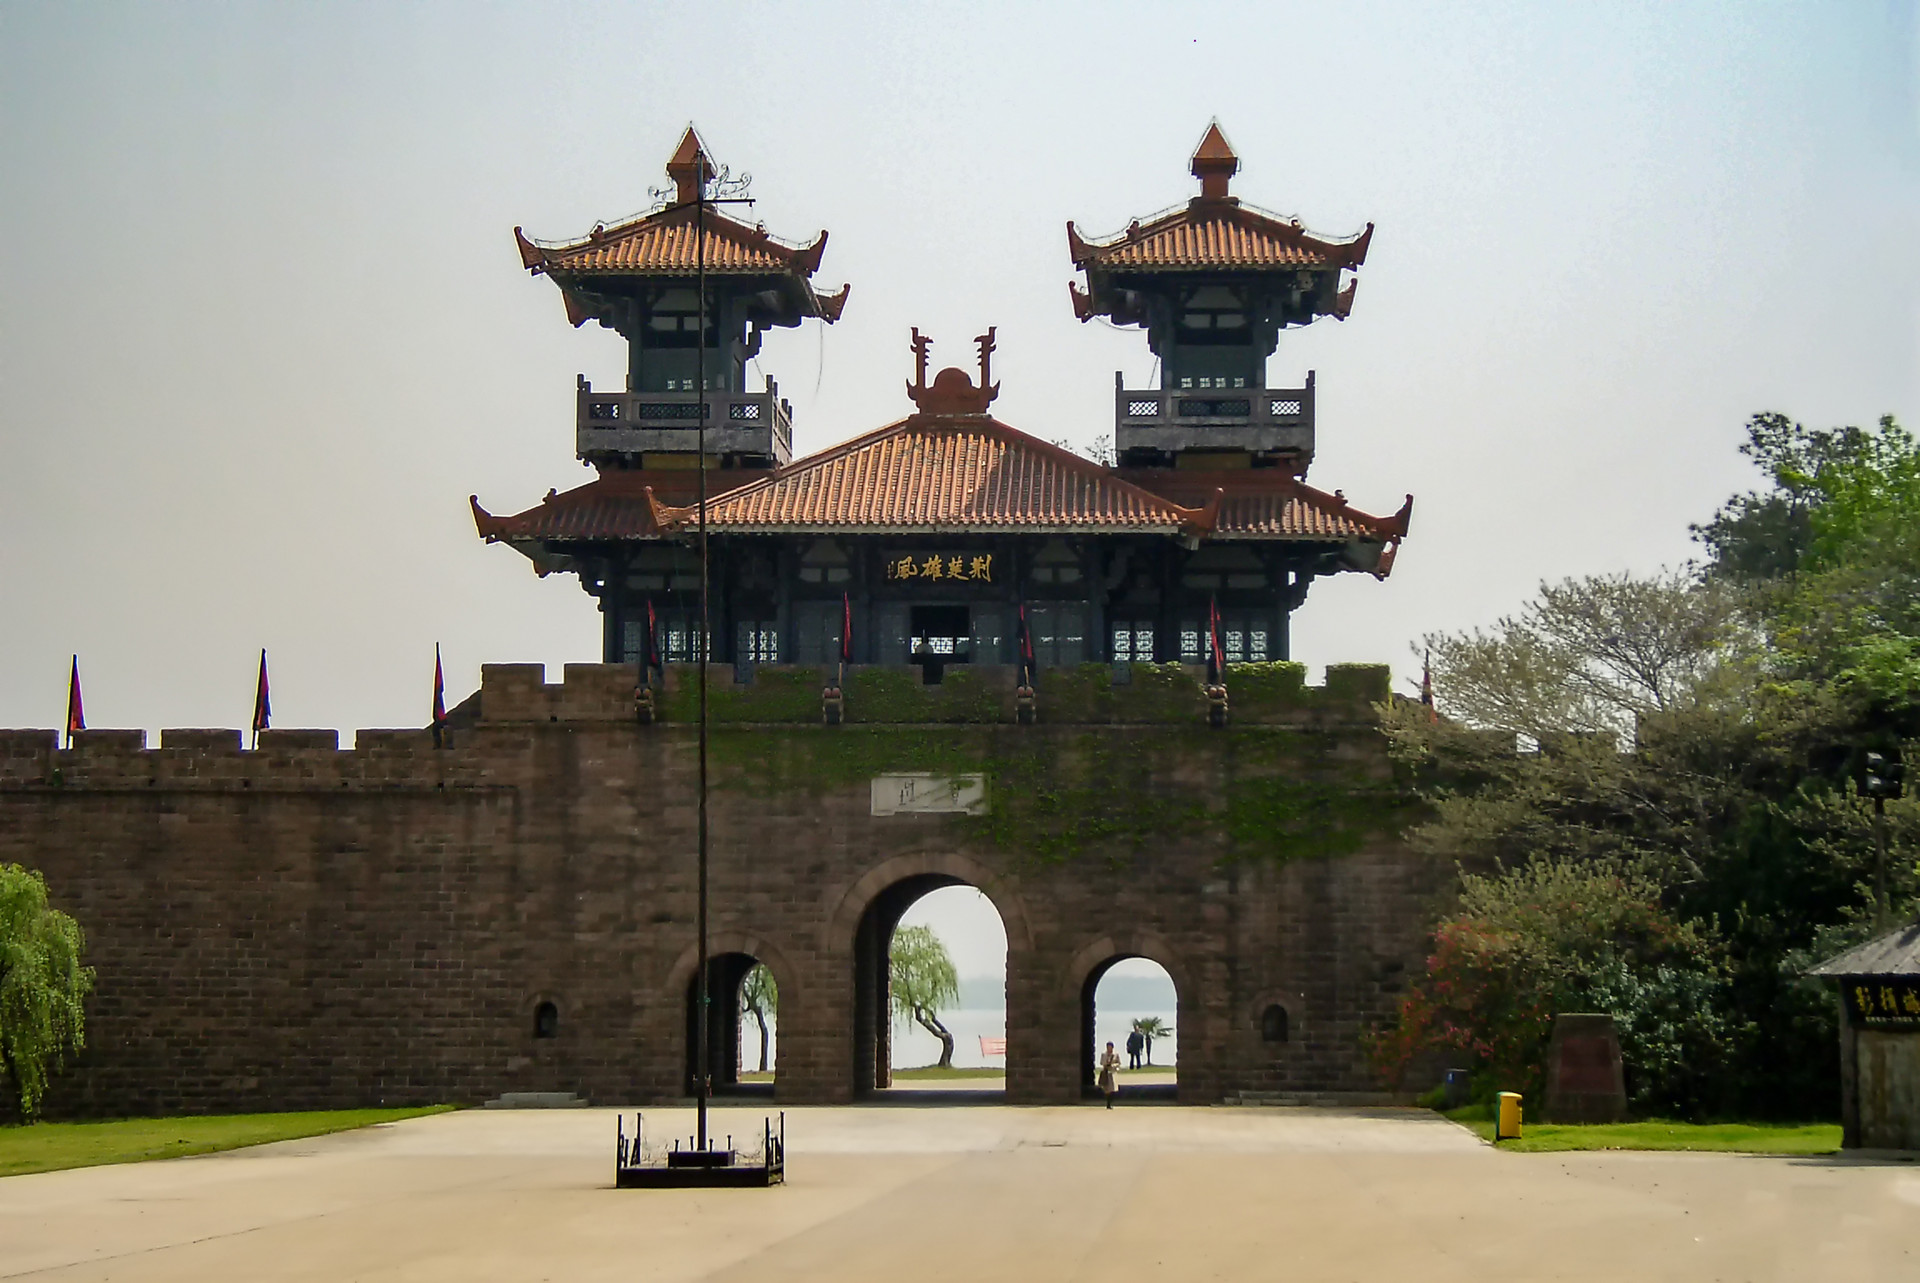 而磨山景区的楚城也极具特色,楚城建于1992年,再现了纪南城的城门